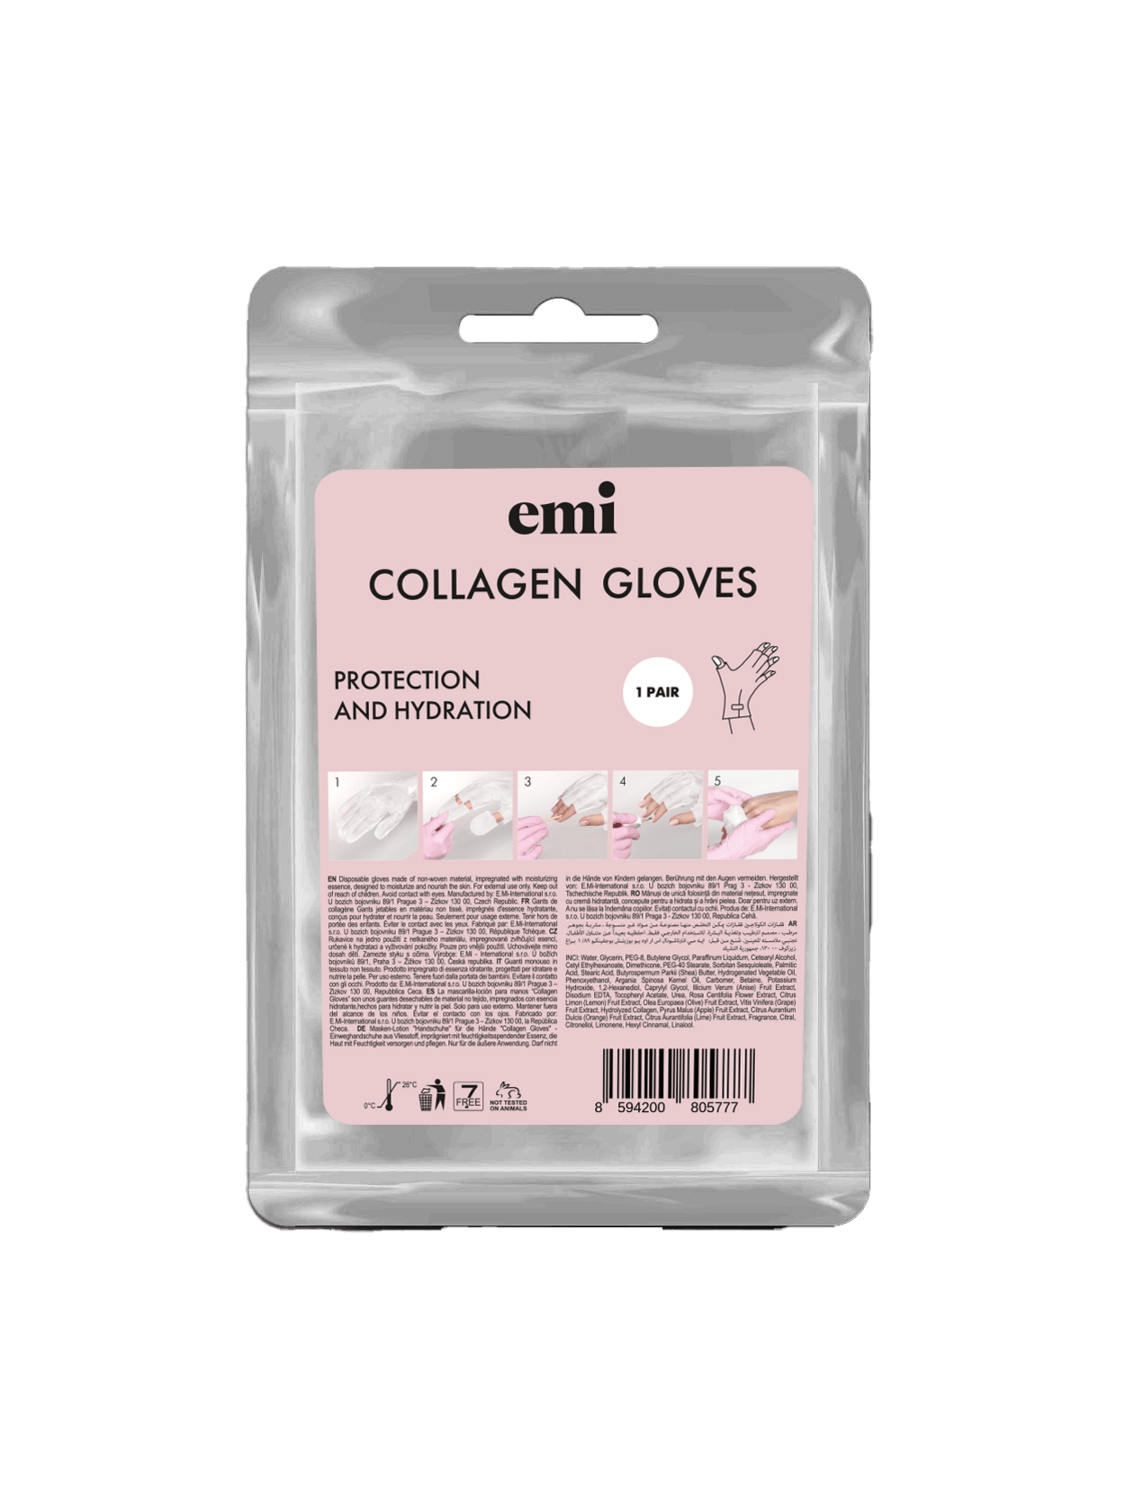 Collagen Gloves 1 pcs